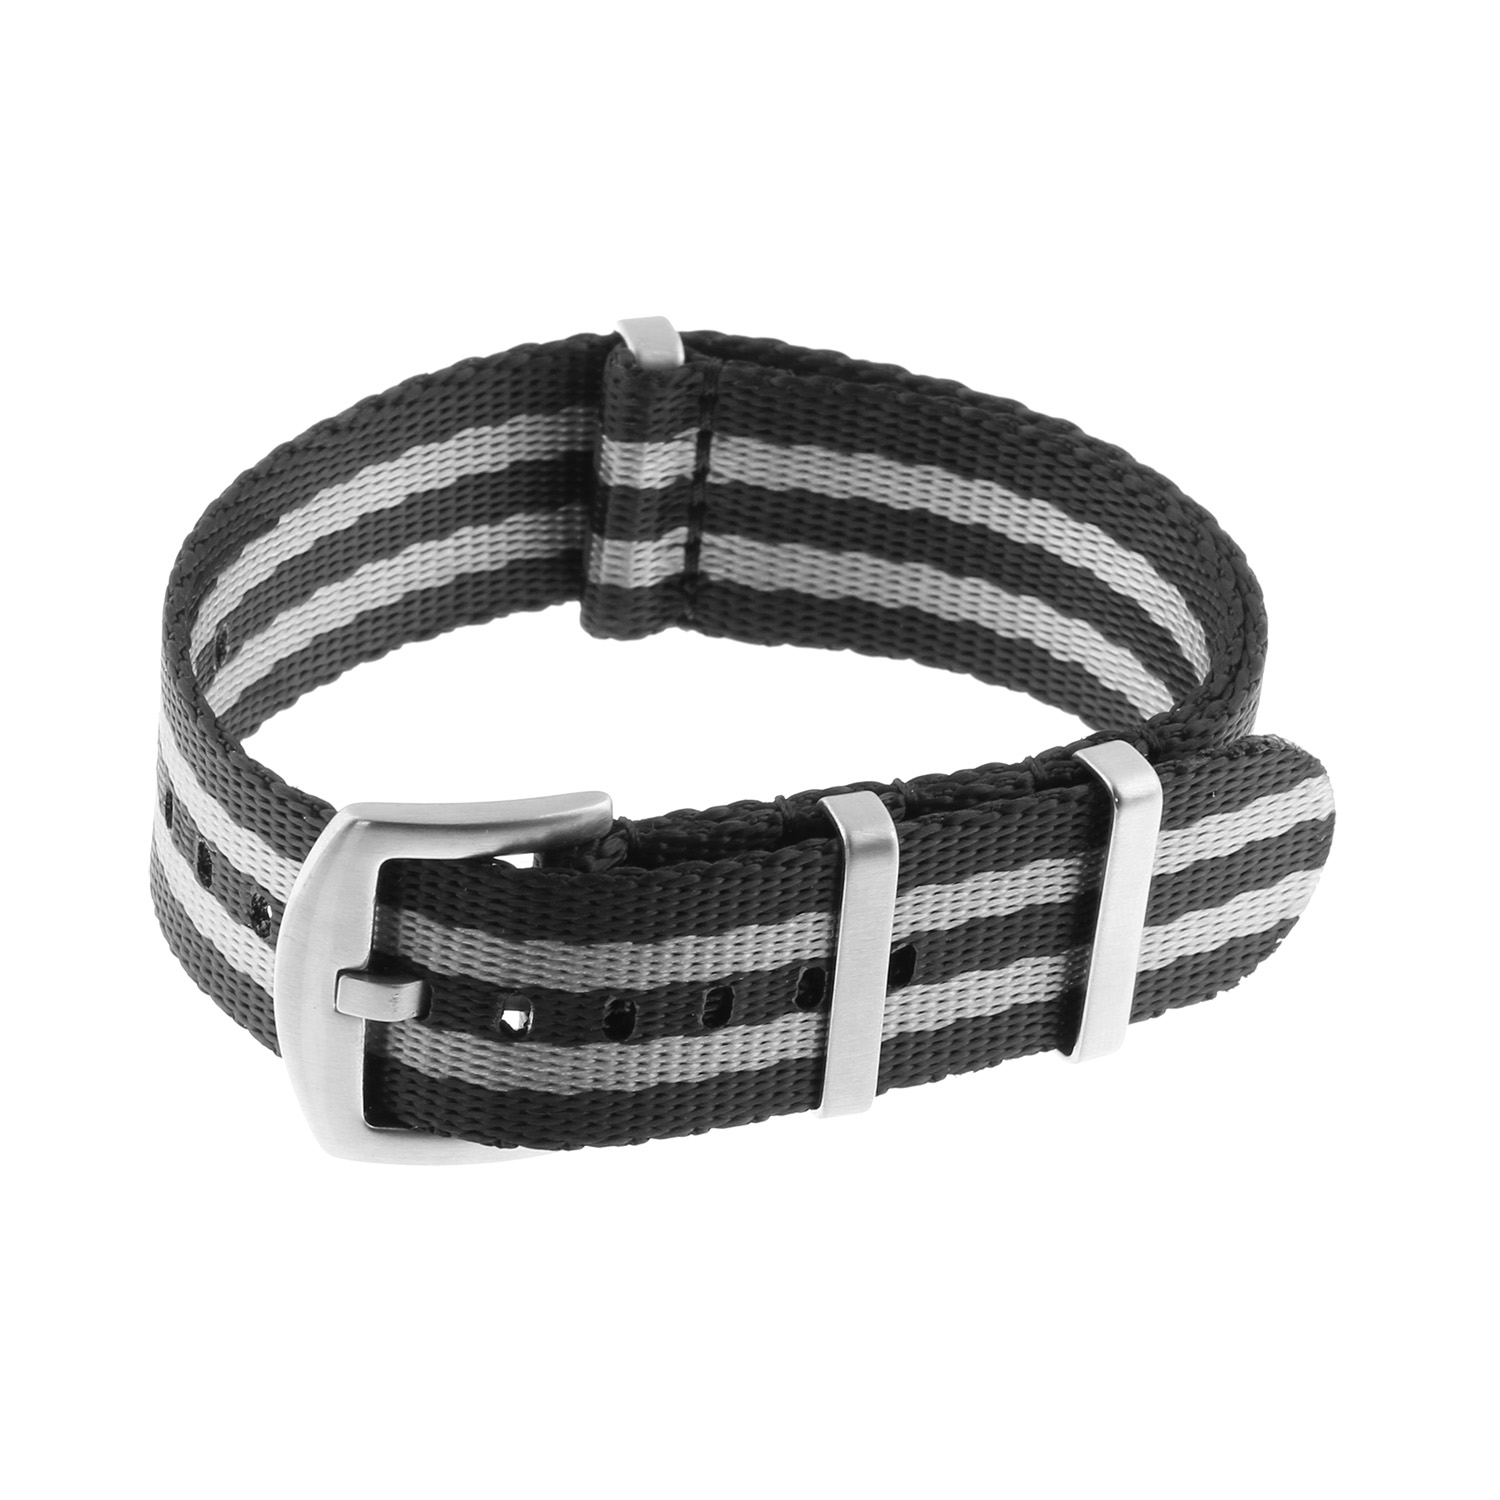 Nt4.nl.1.7 Main Black & Grey StrapsCo Premium Woven Nylon Seatbelt NATO Watch Band Strap 18mm 20mm 22mm 24mm